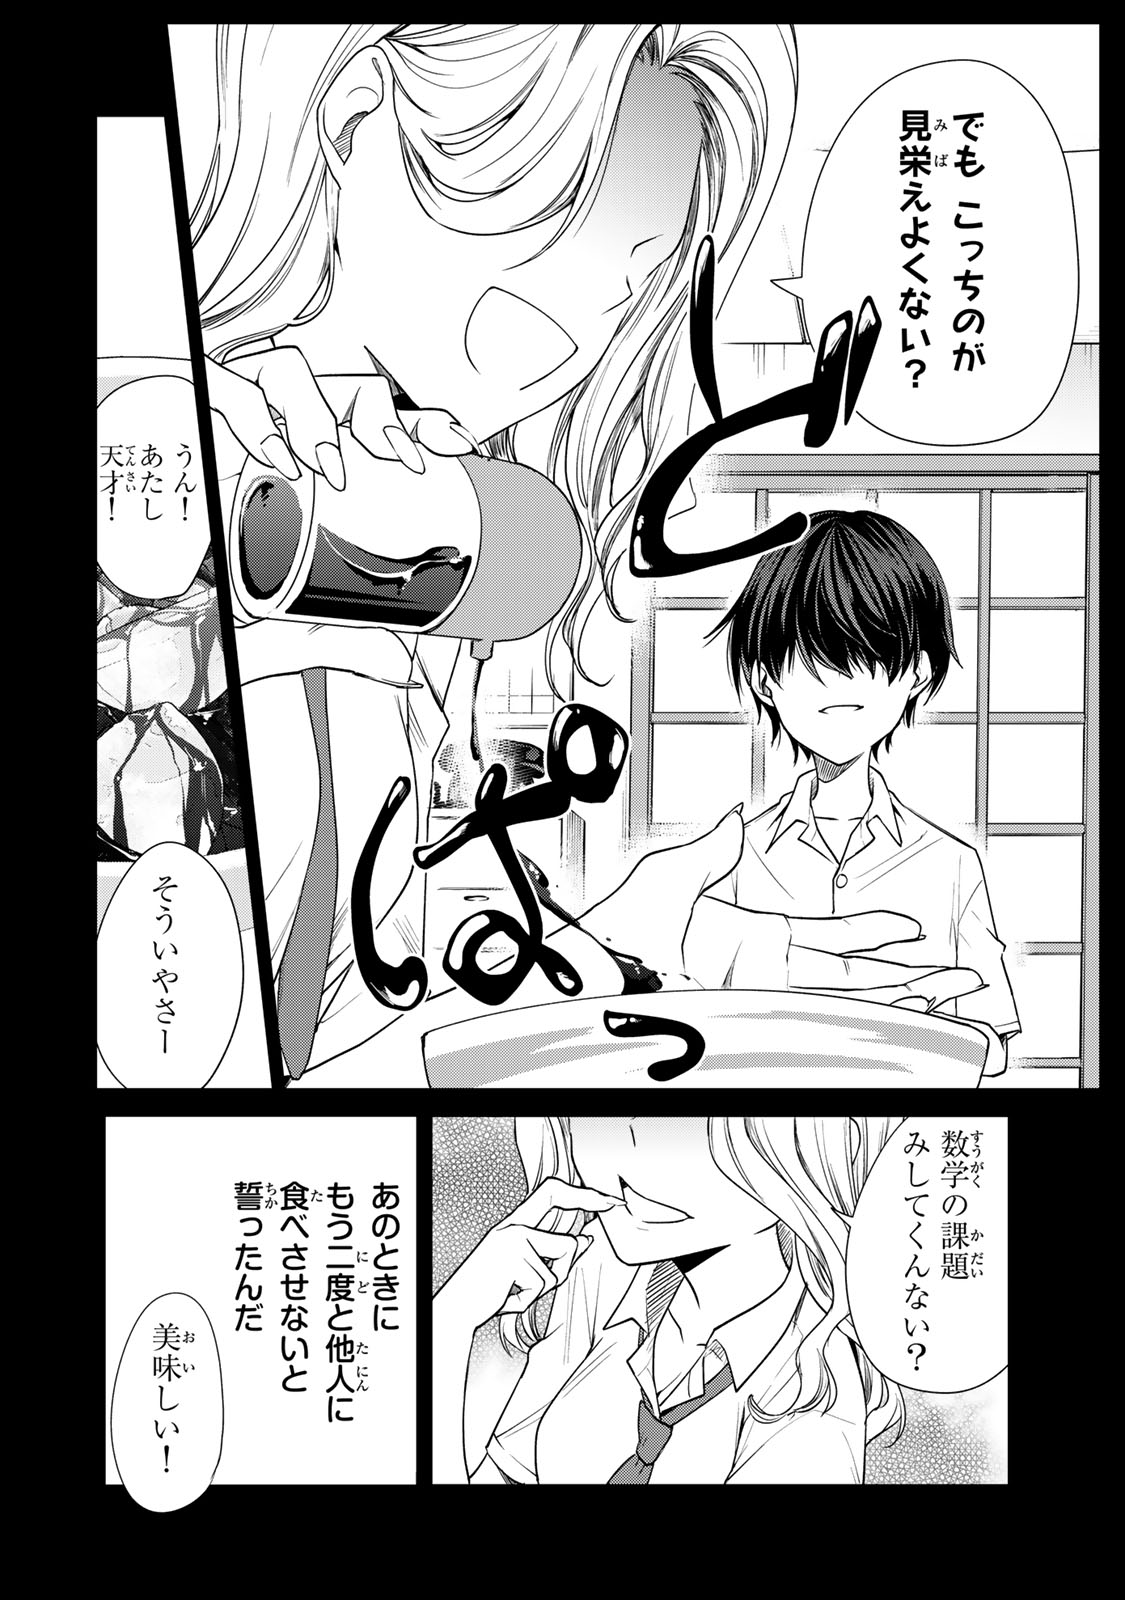 Kyou no Ohiru wa Nan desu ka? - Chapter 9 - Page 2